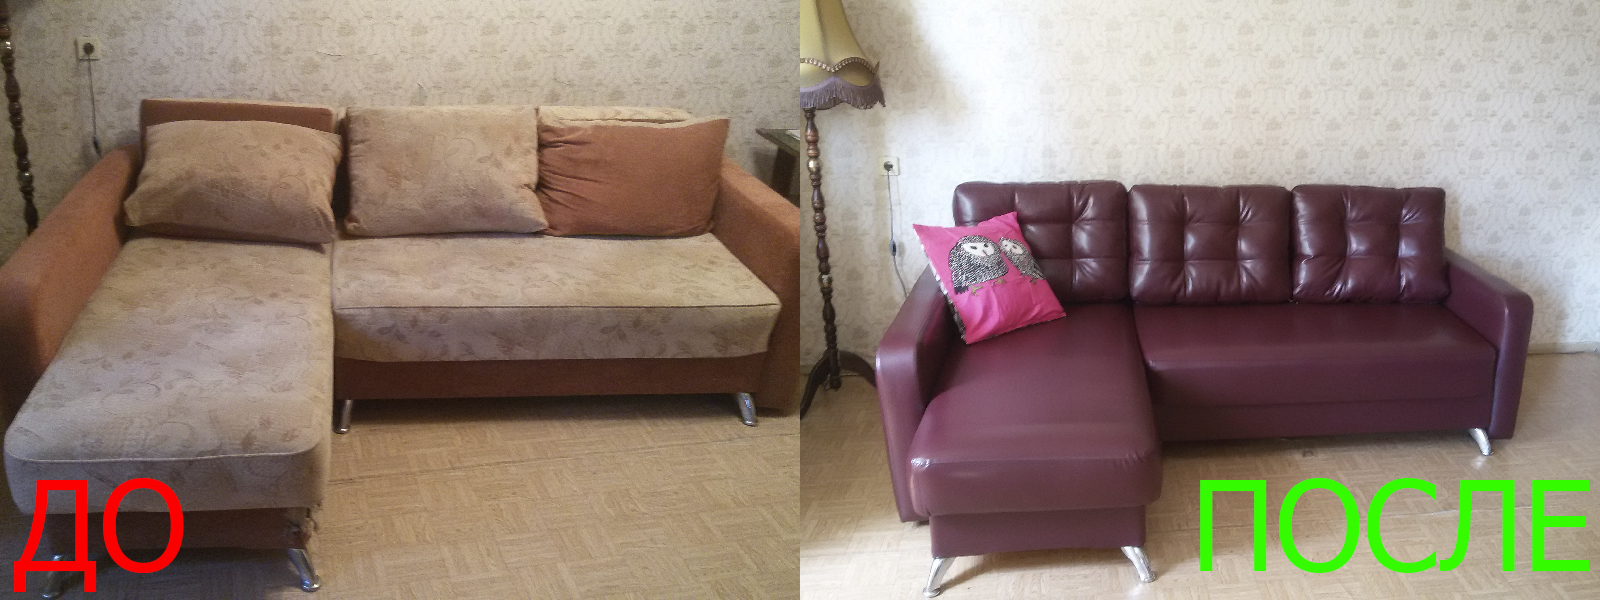 Перетяжка углового дивана в Евпатории от опытных мастеров компании MebelProfi - 100% гарантия